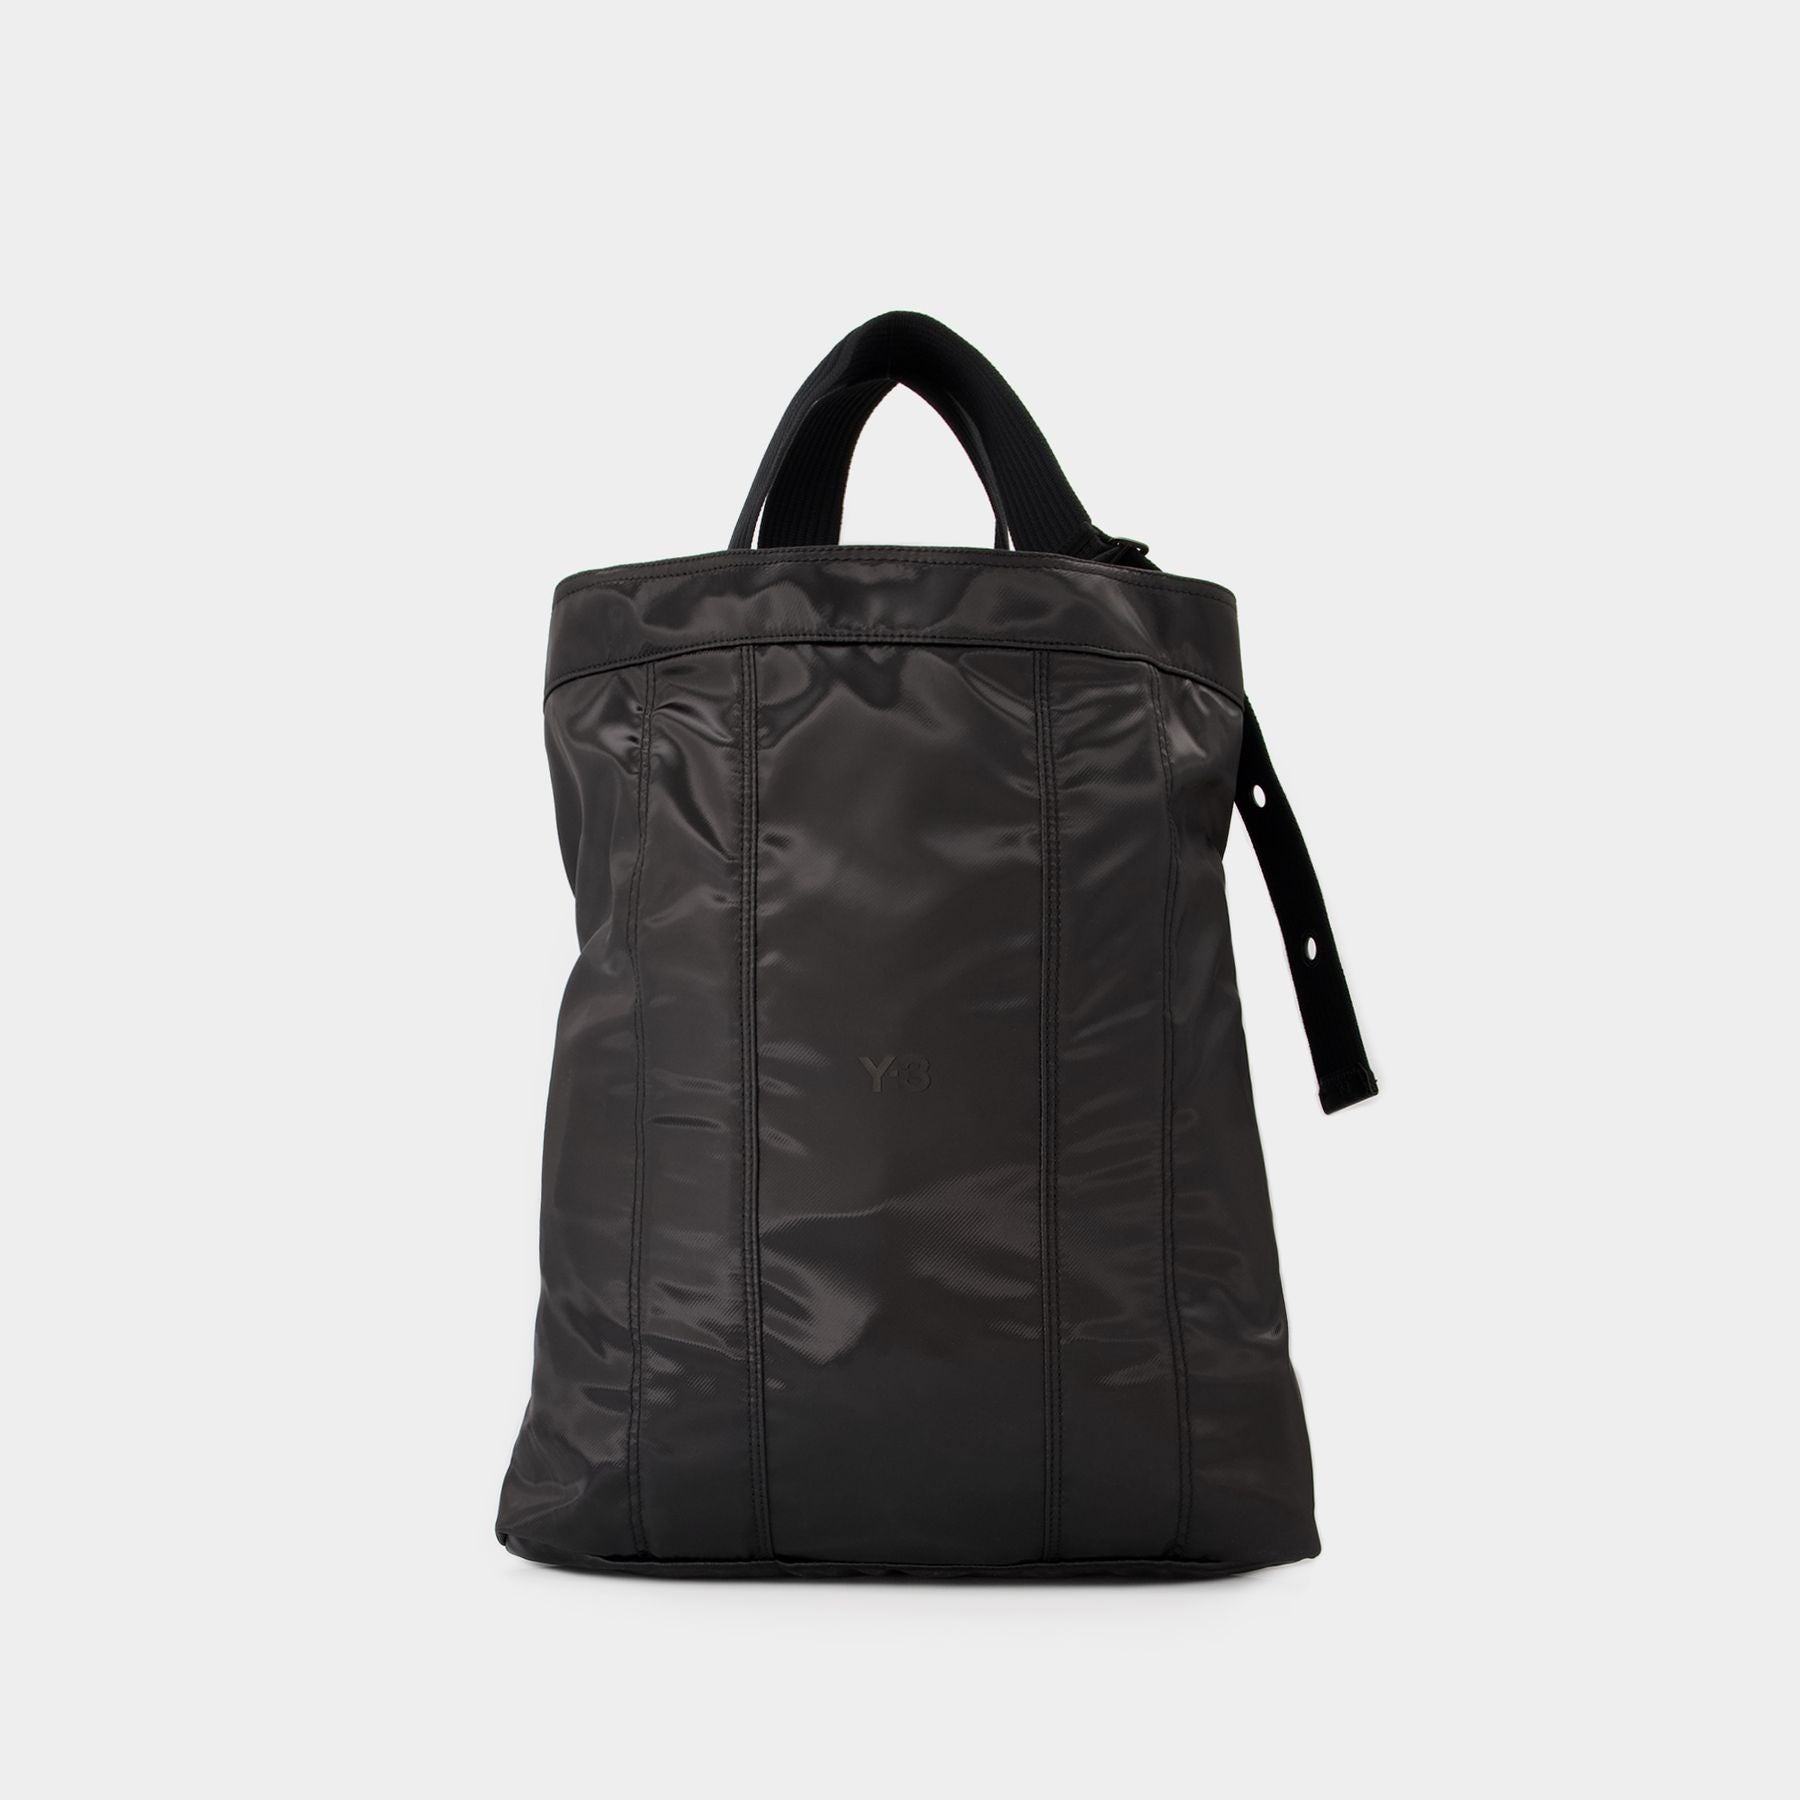 Uniqlo x J.W. Anderson + Reversible Tote Bag